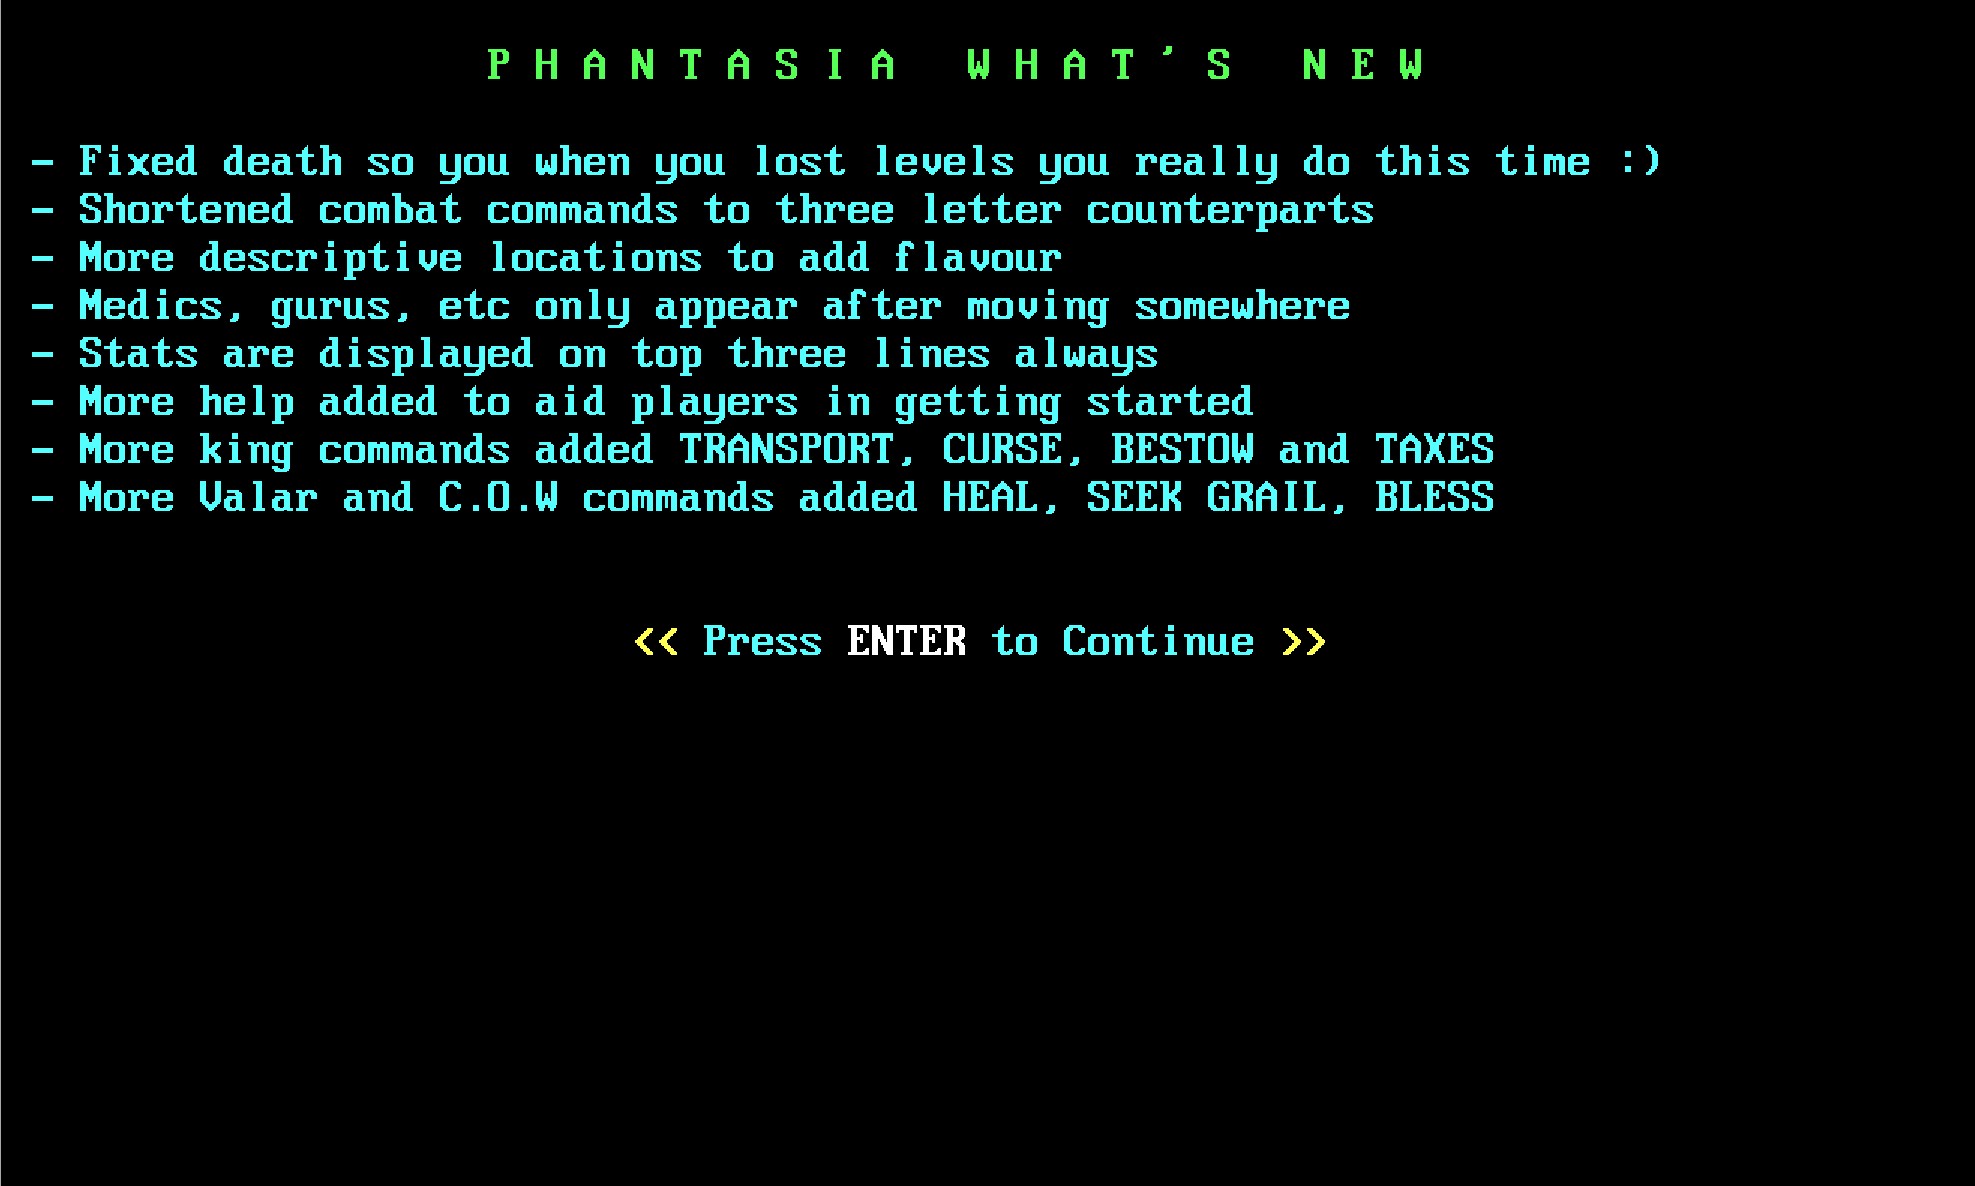 Phantasia whats new